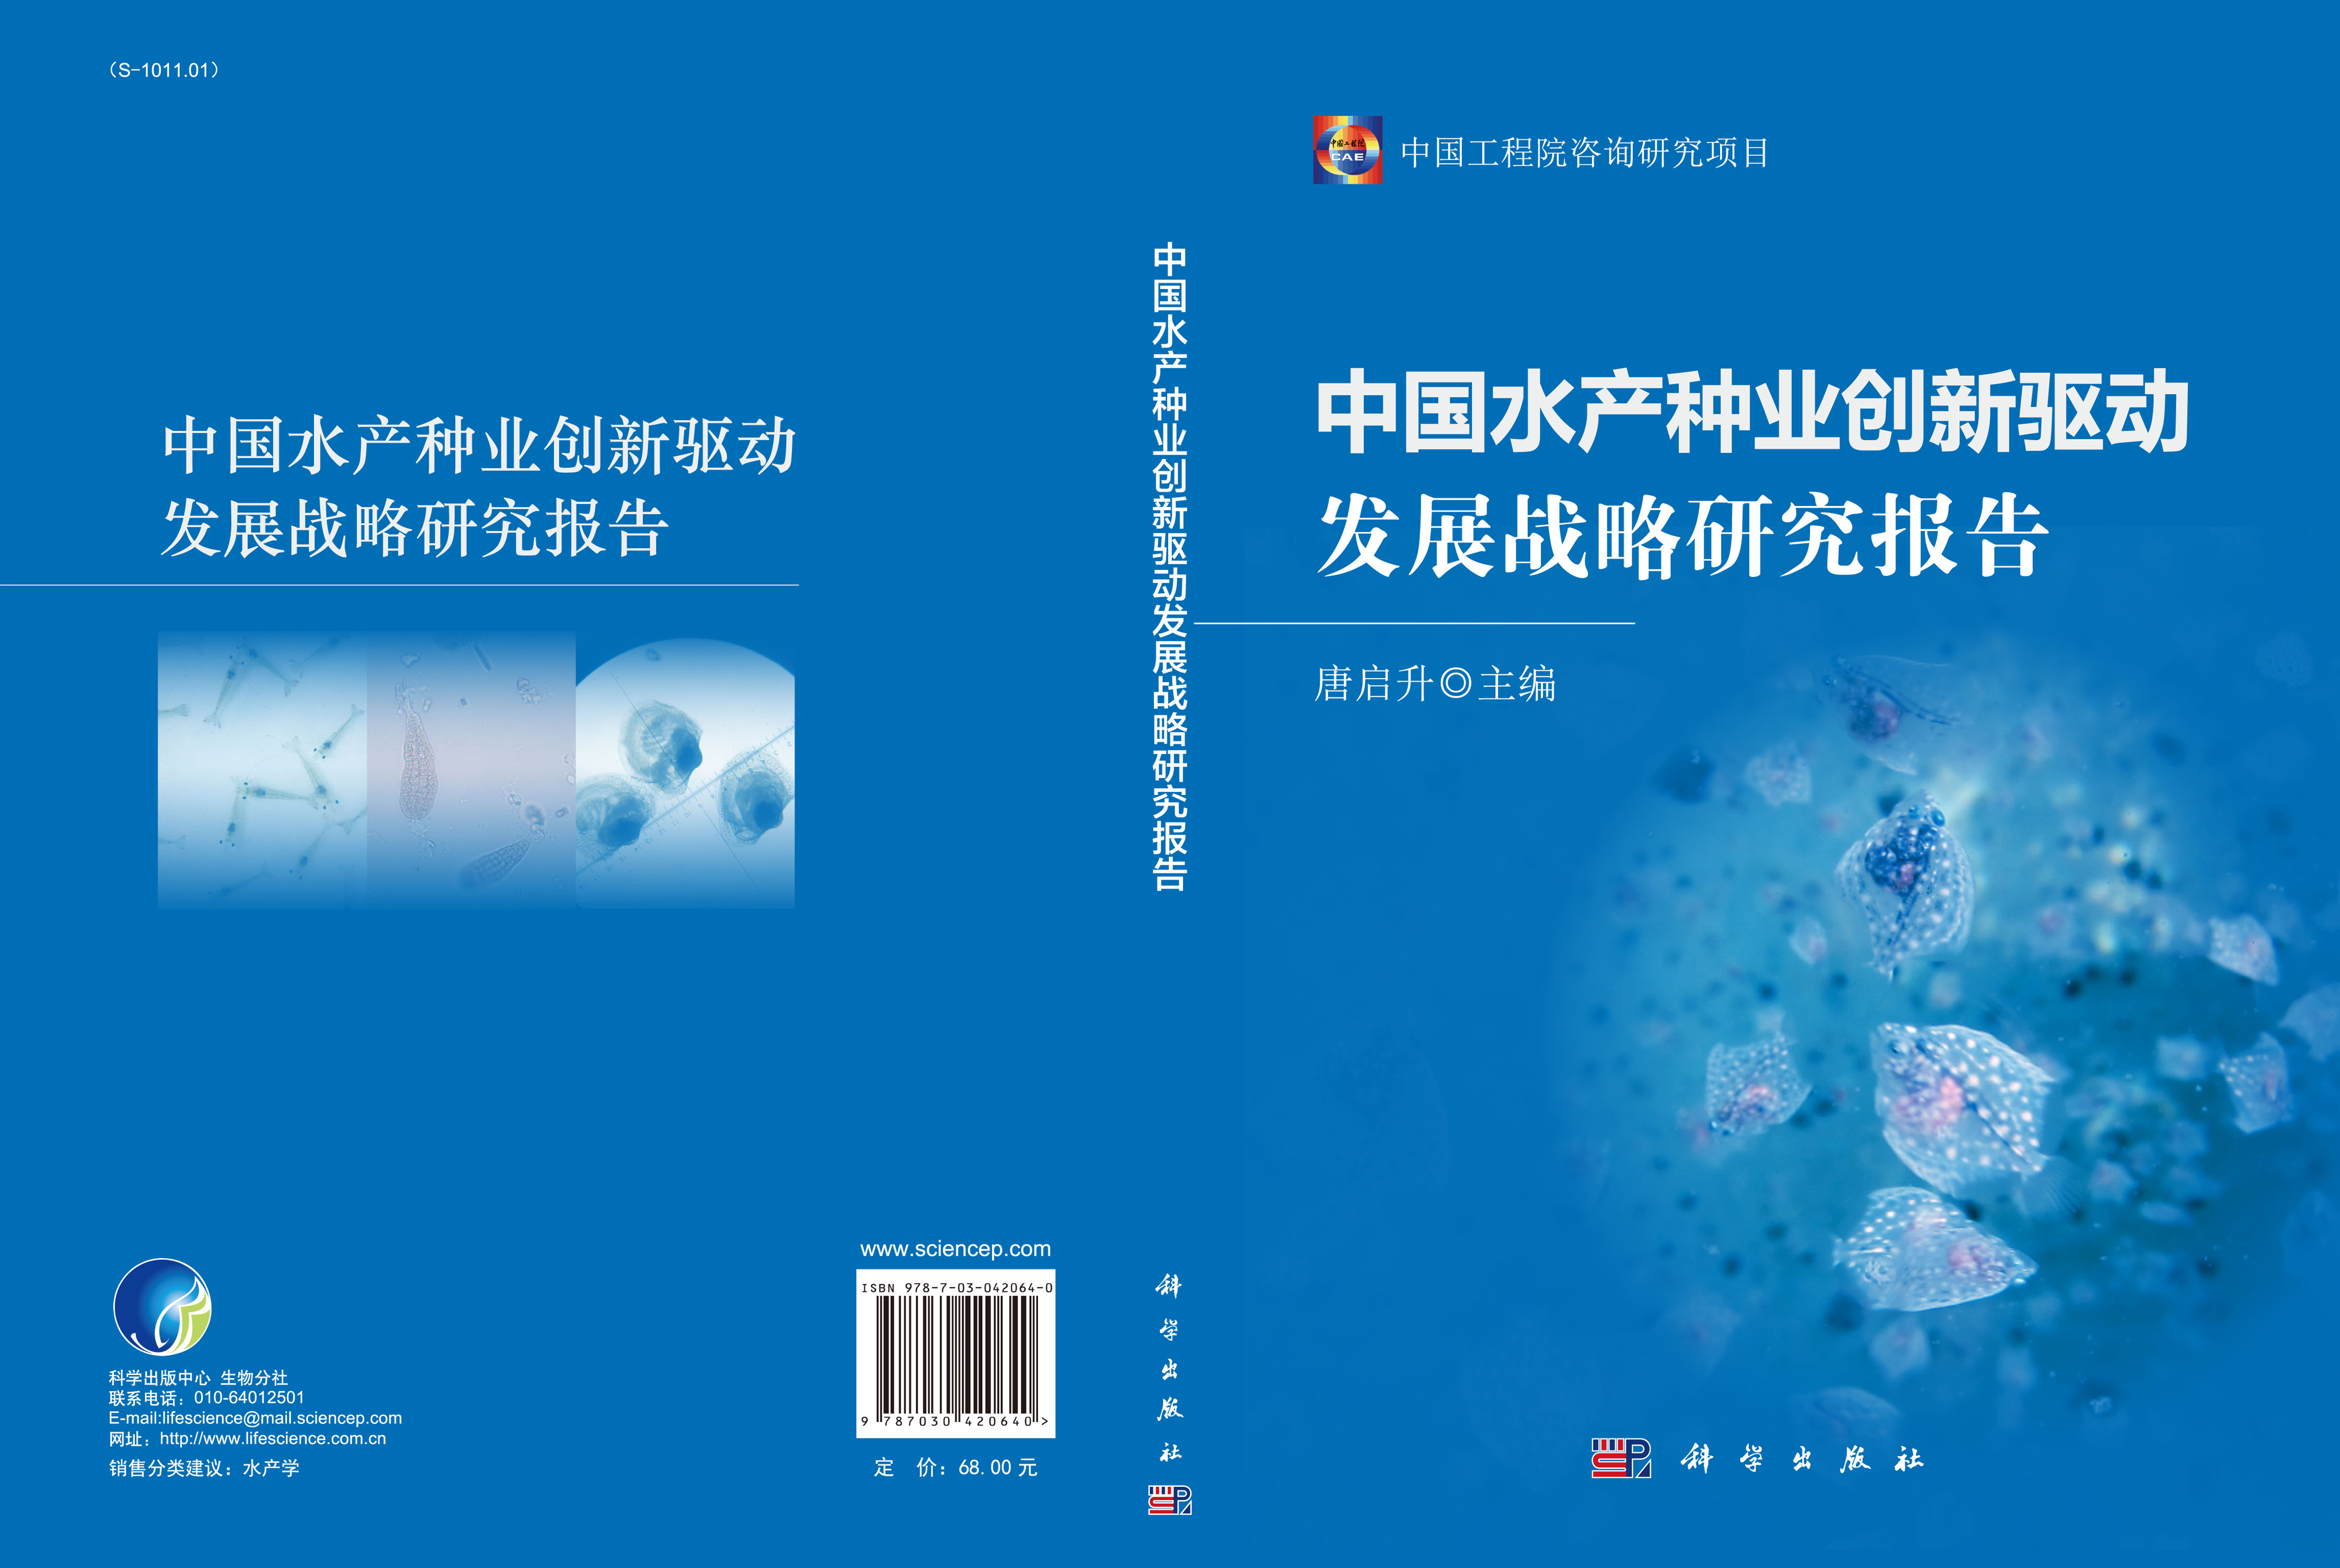 中国水产种业创新驱动发展战略研究报告